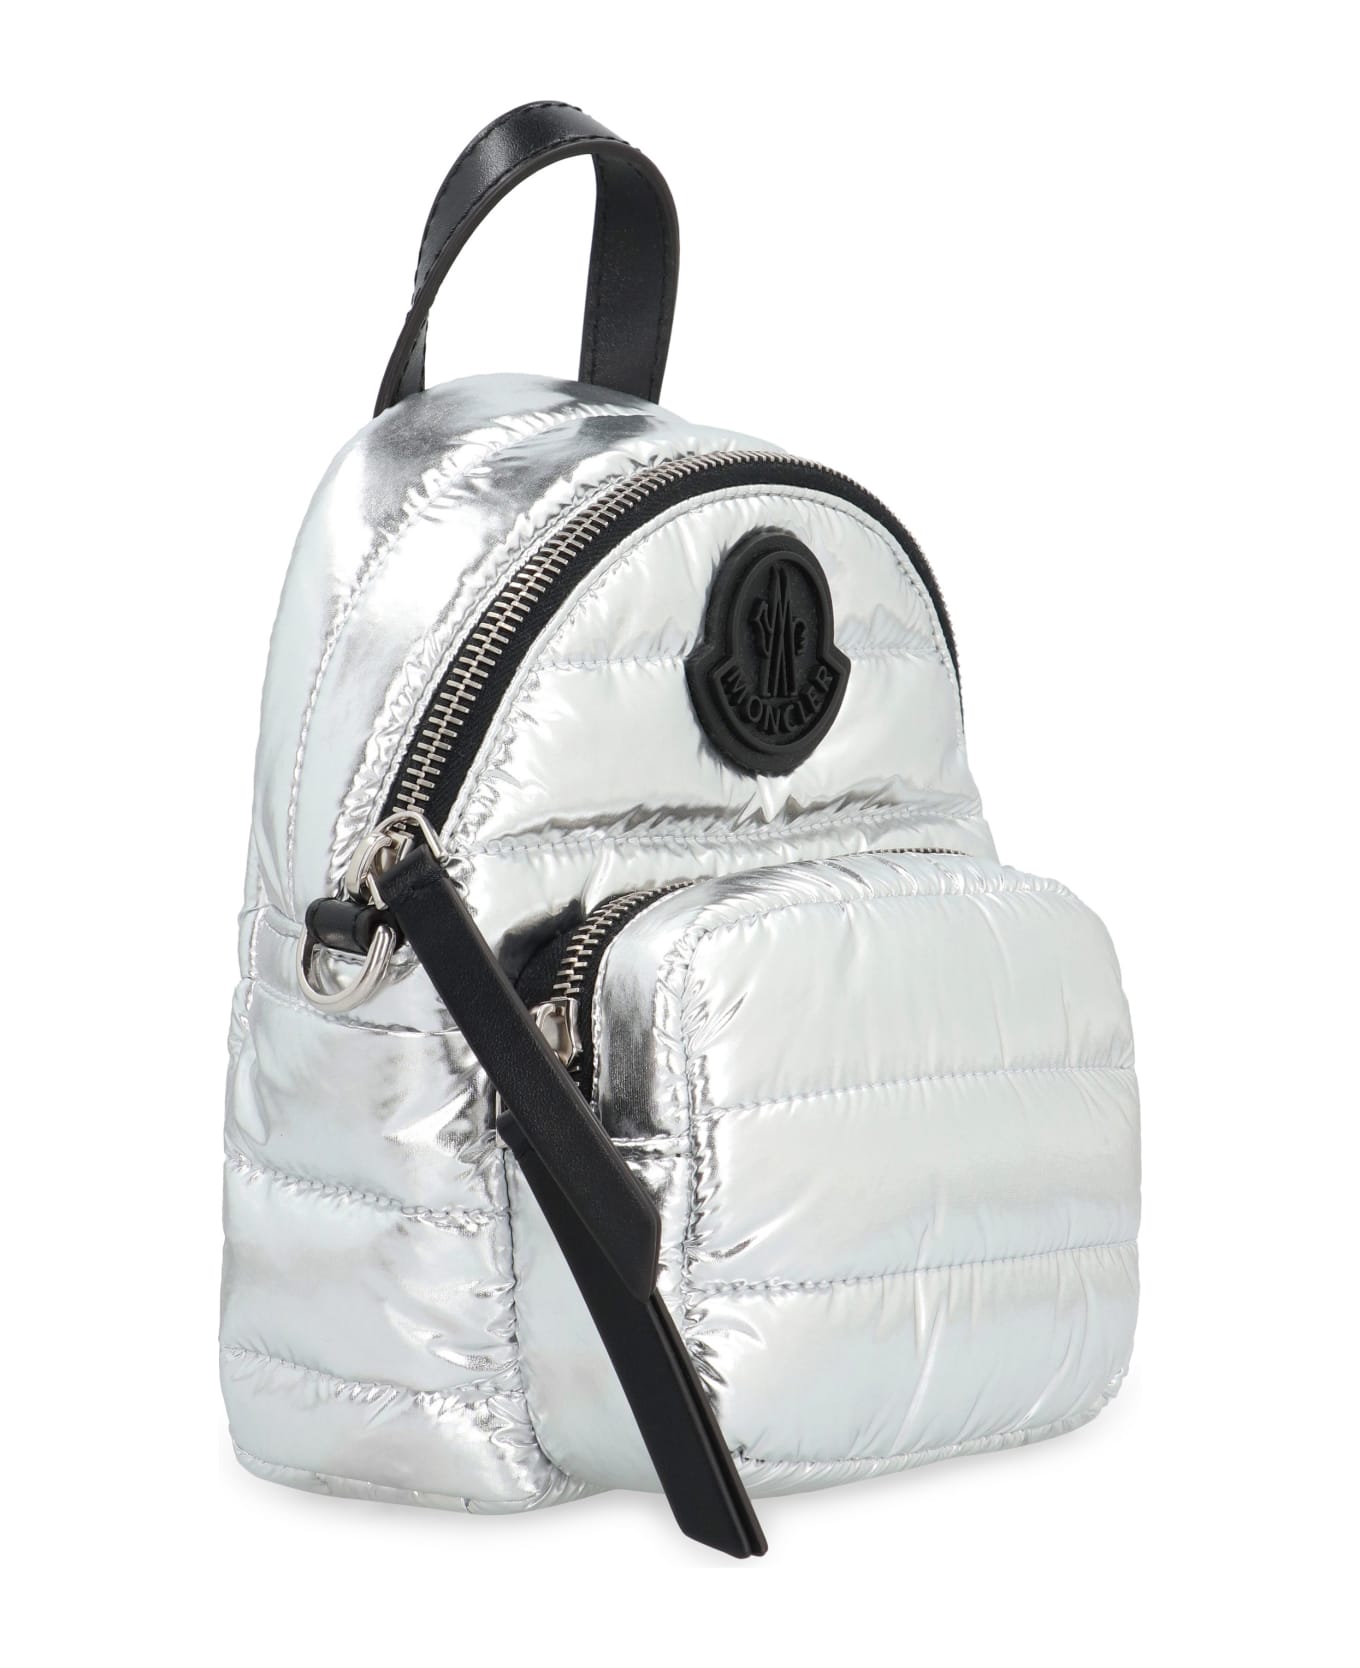 Moncler Kilia Fabric Shoulder Bag - Silver